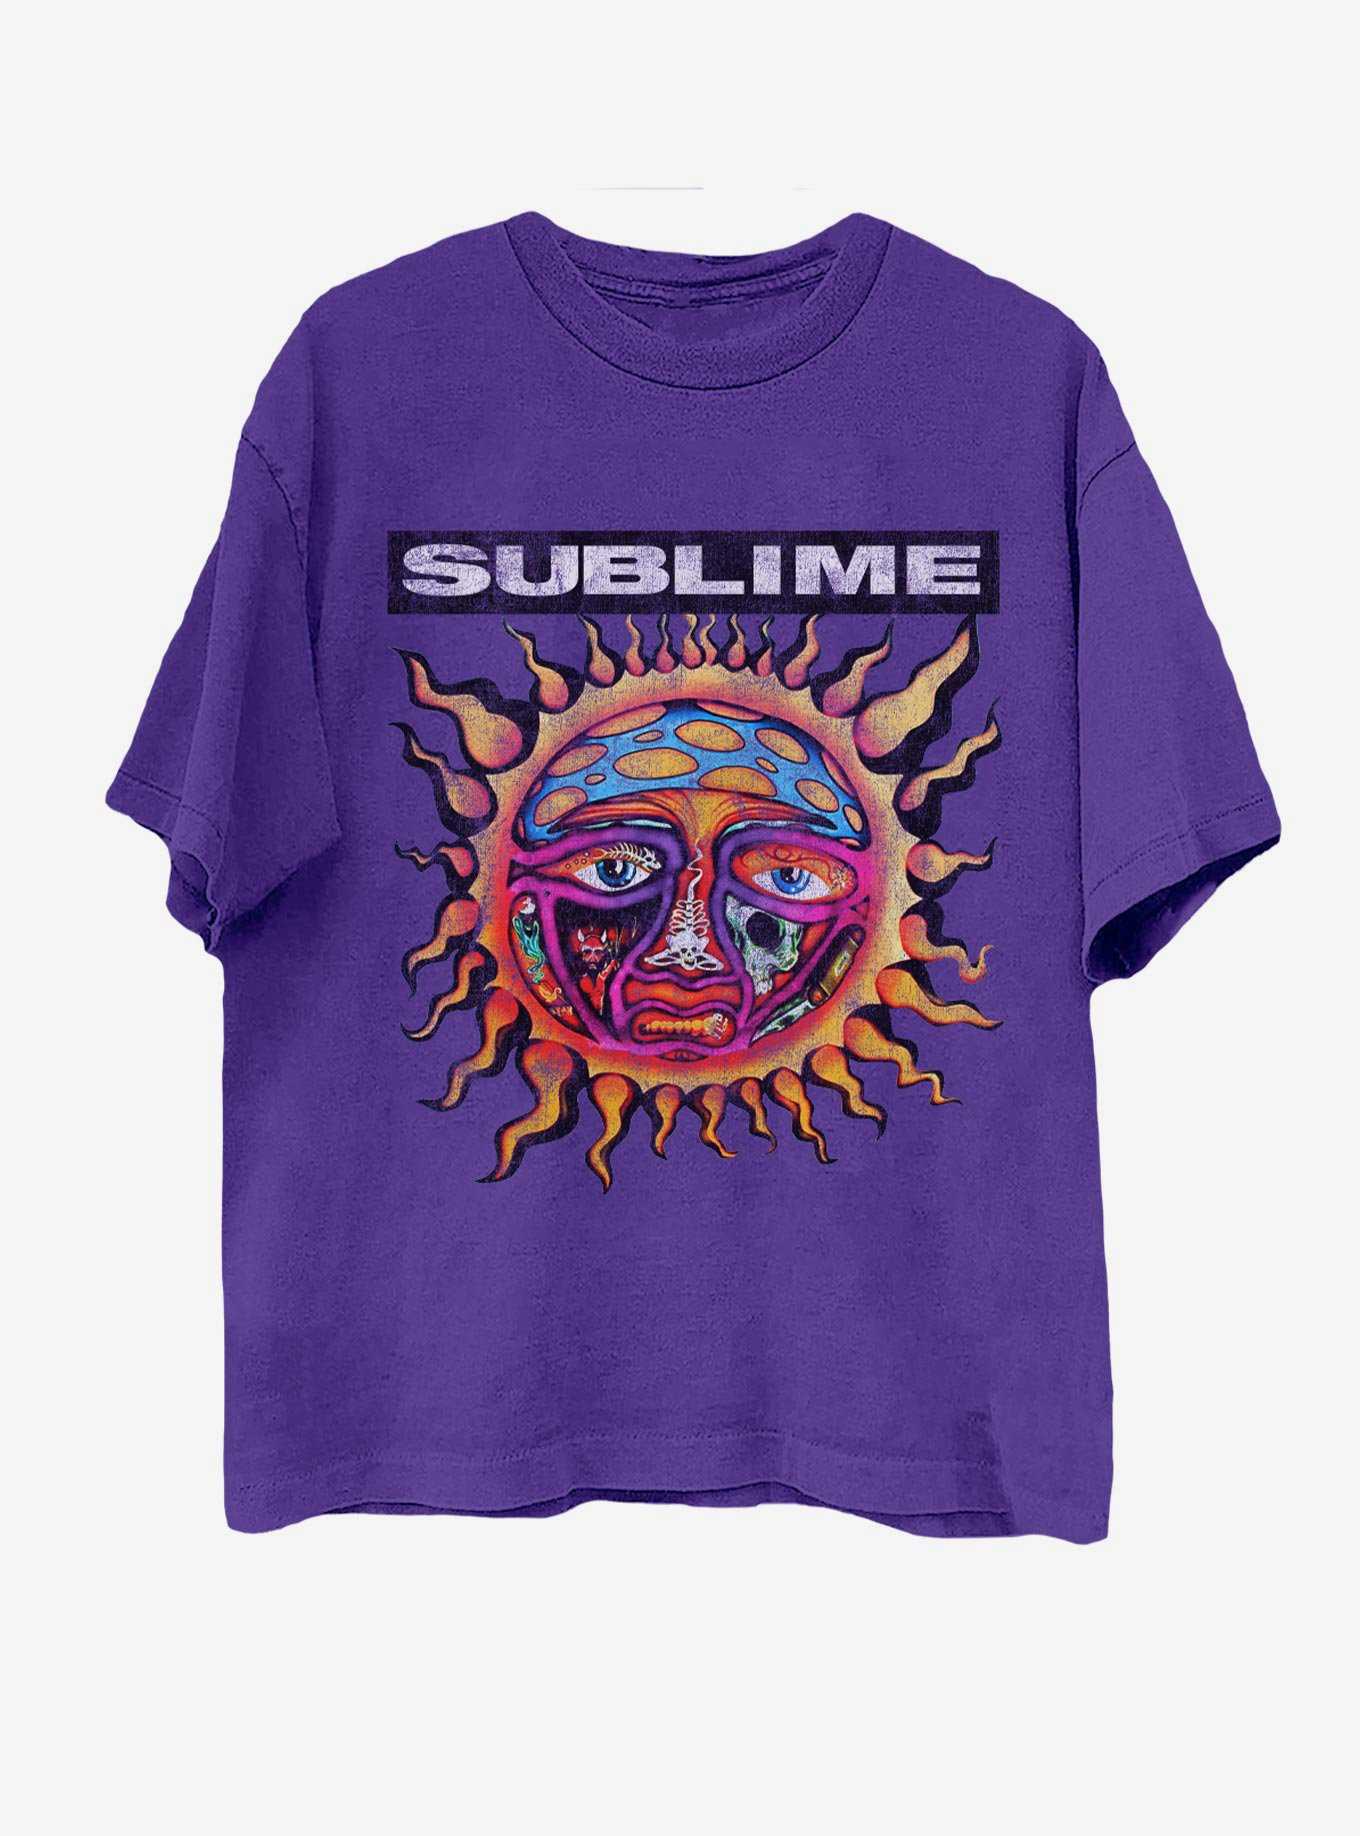 Sublime Logo Purple Boyfriend Fit Girls T-Shirt, , hi-res